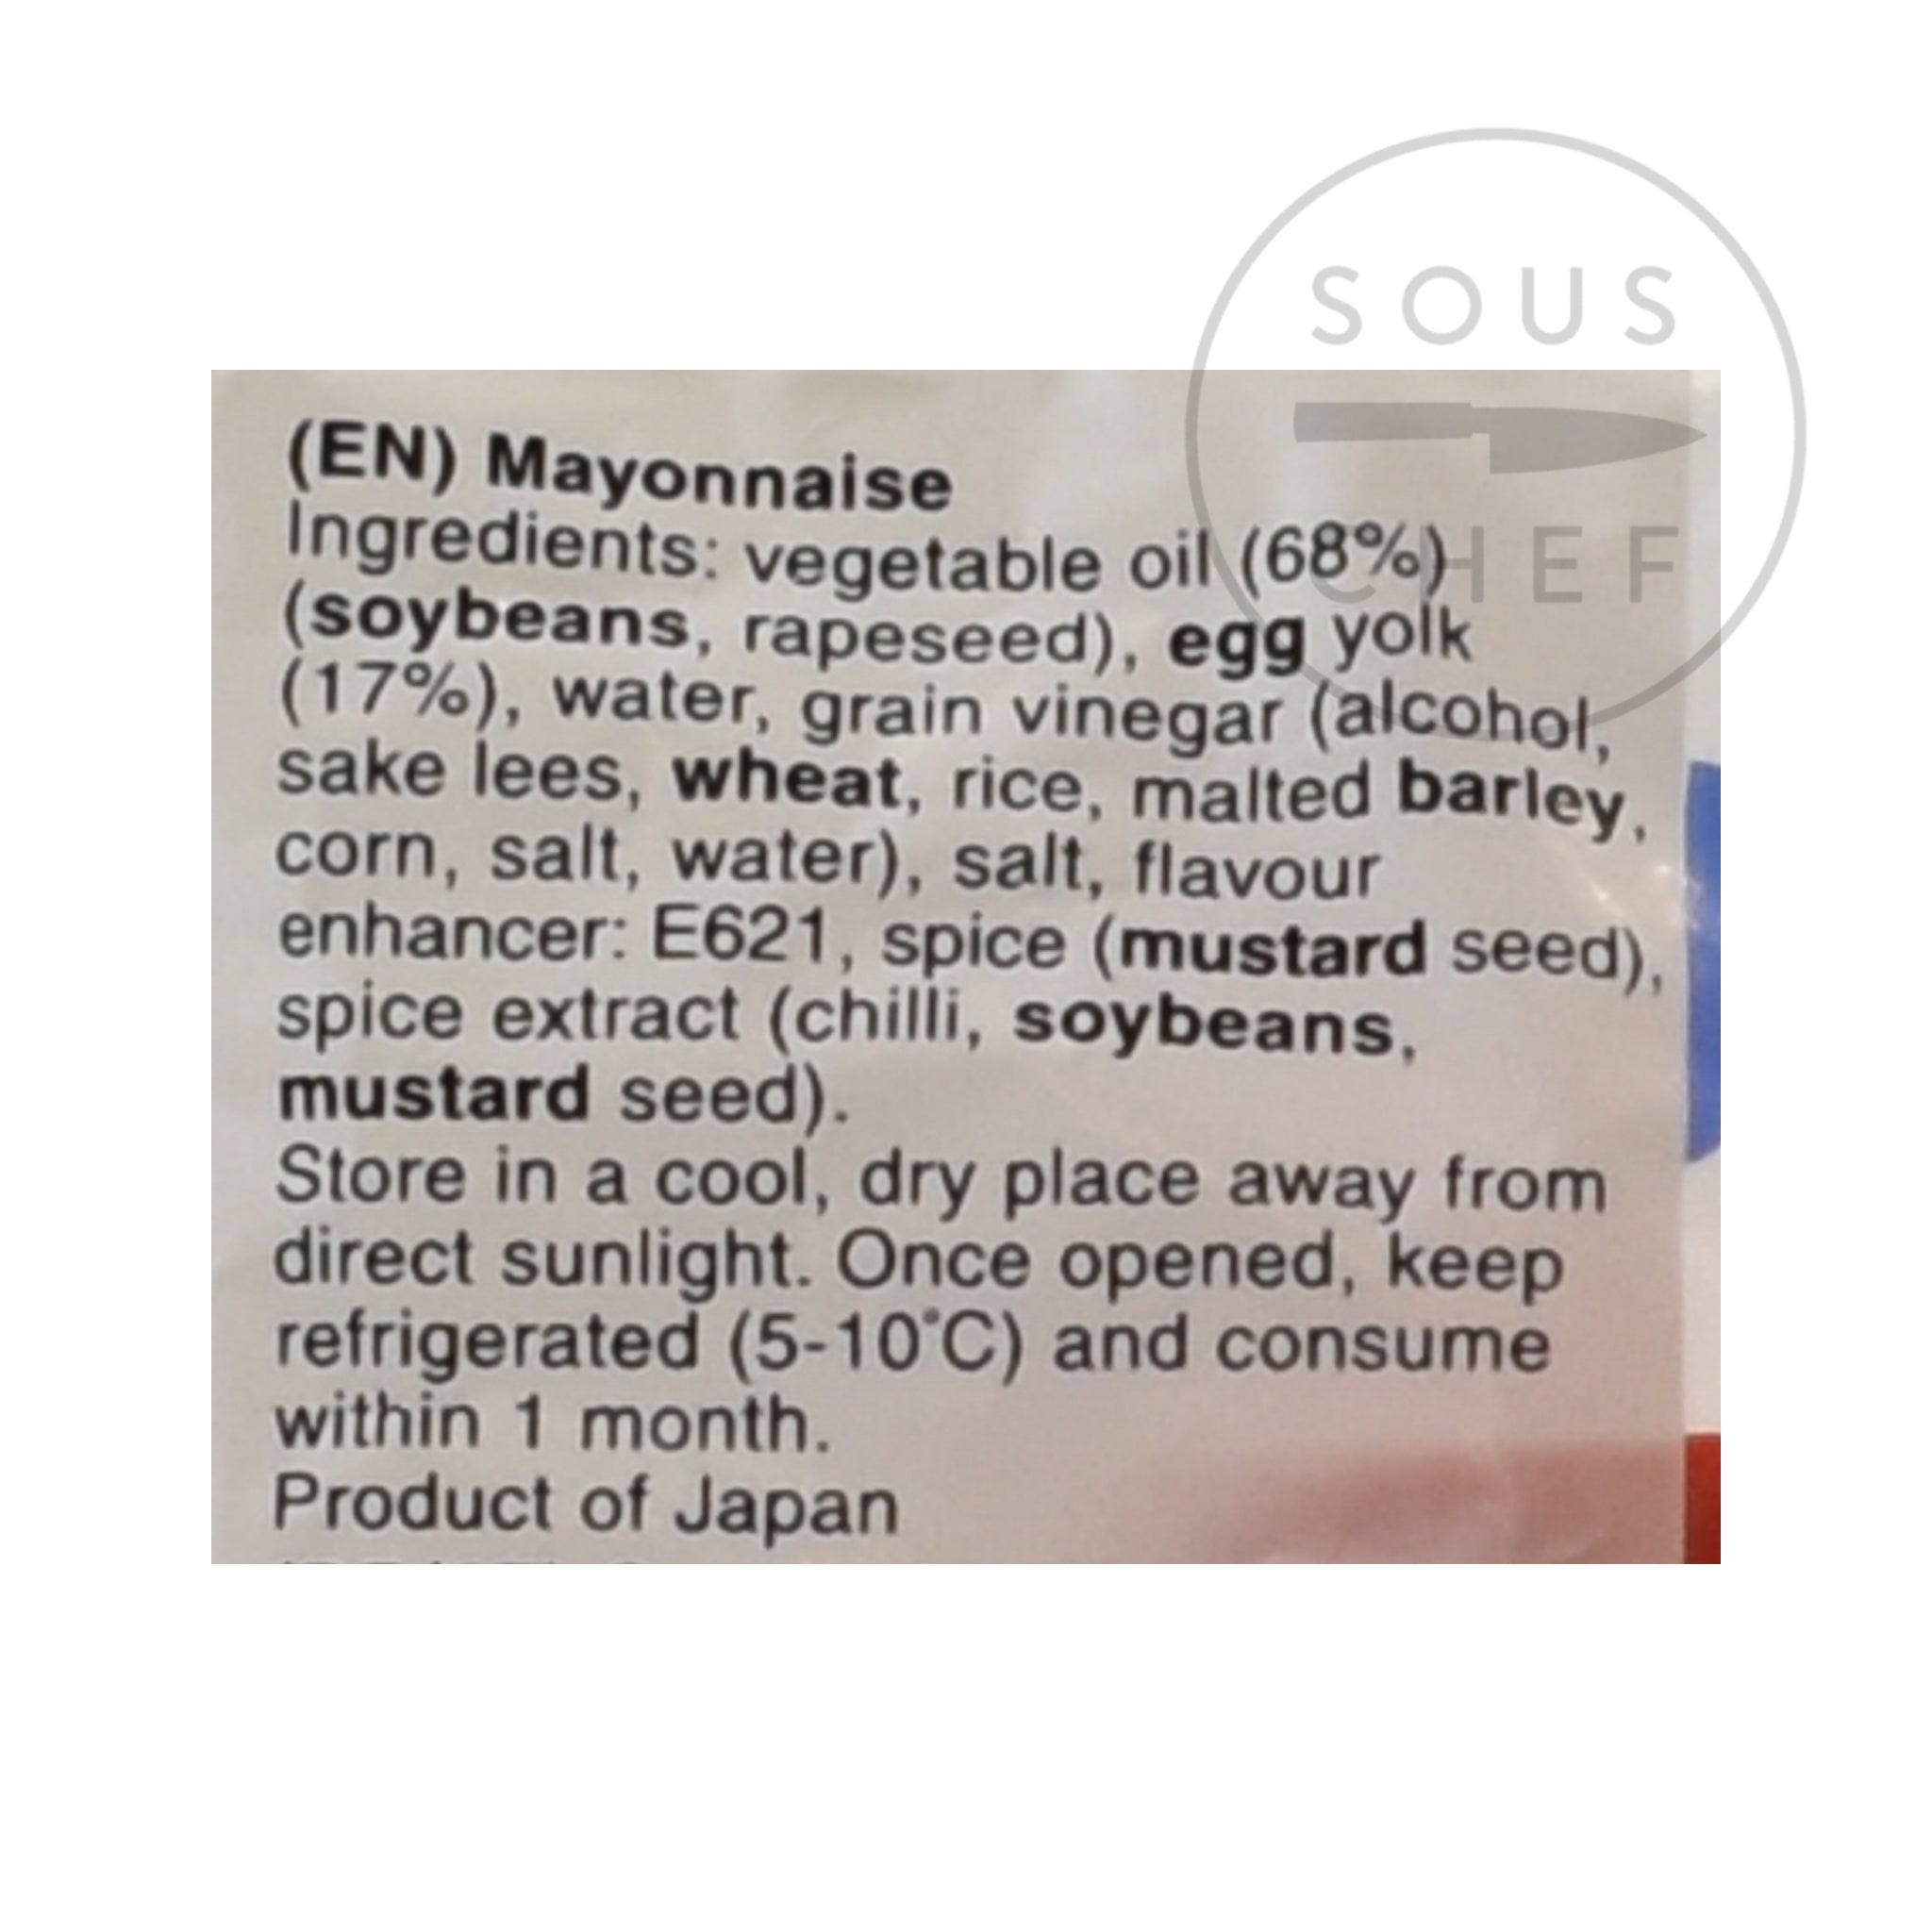 Japanese Kenko Mayonnaise 500g ingredients